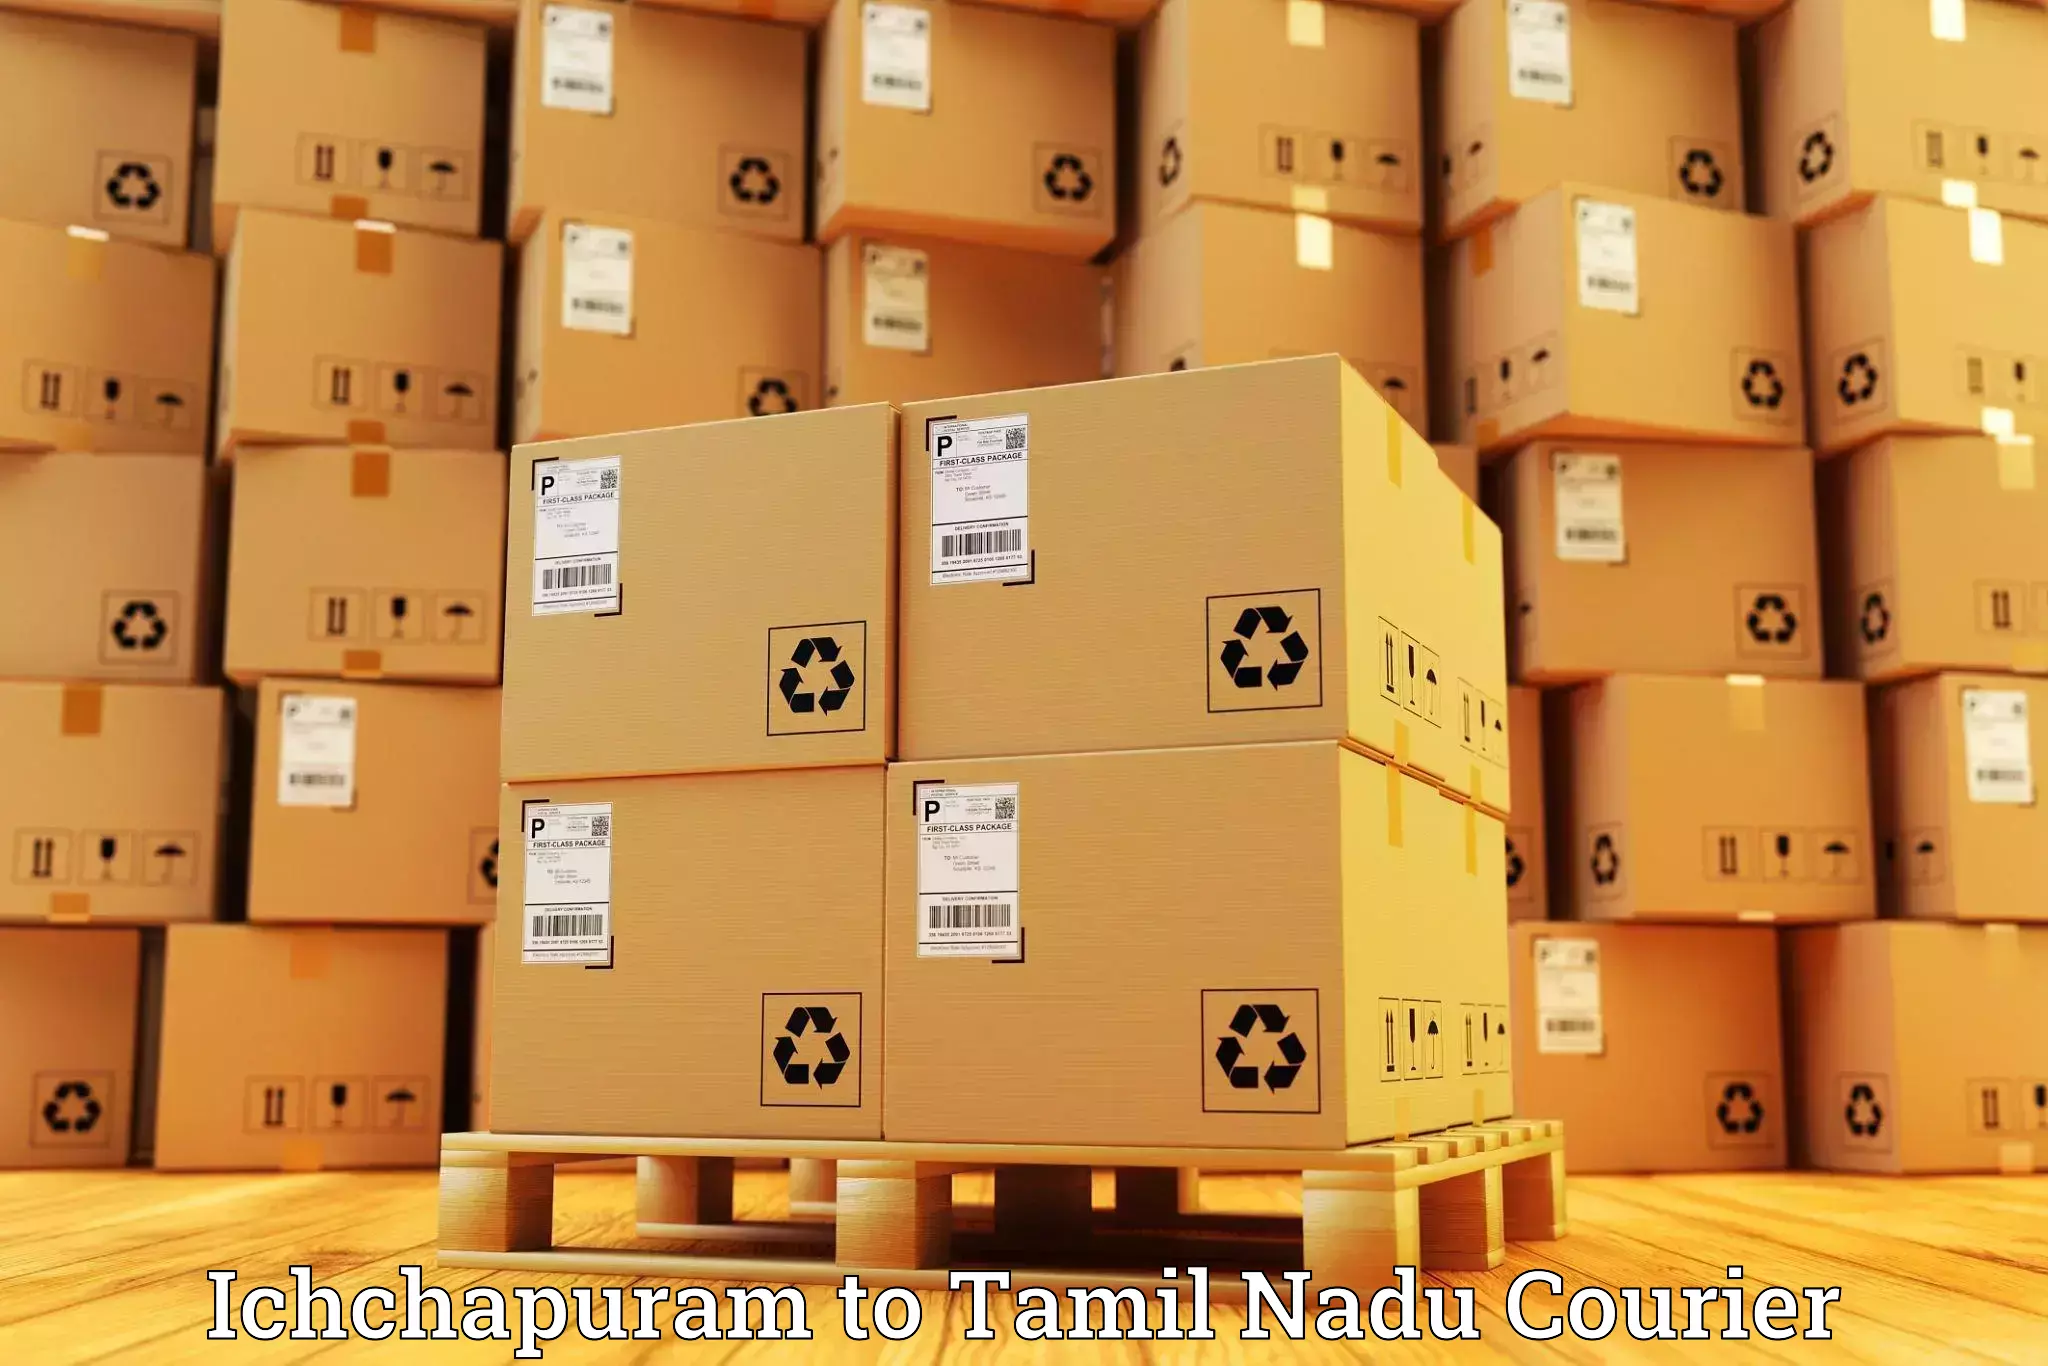 Express delivery network Ichchapuram to Palladam